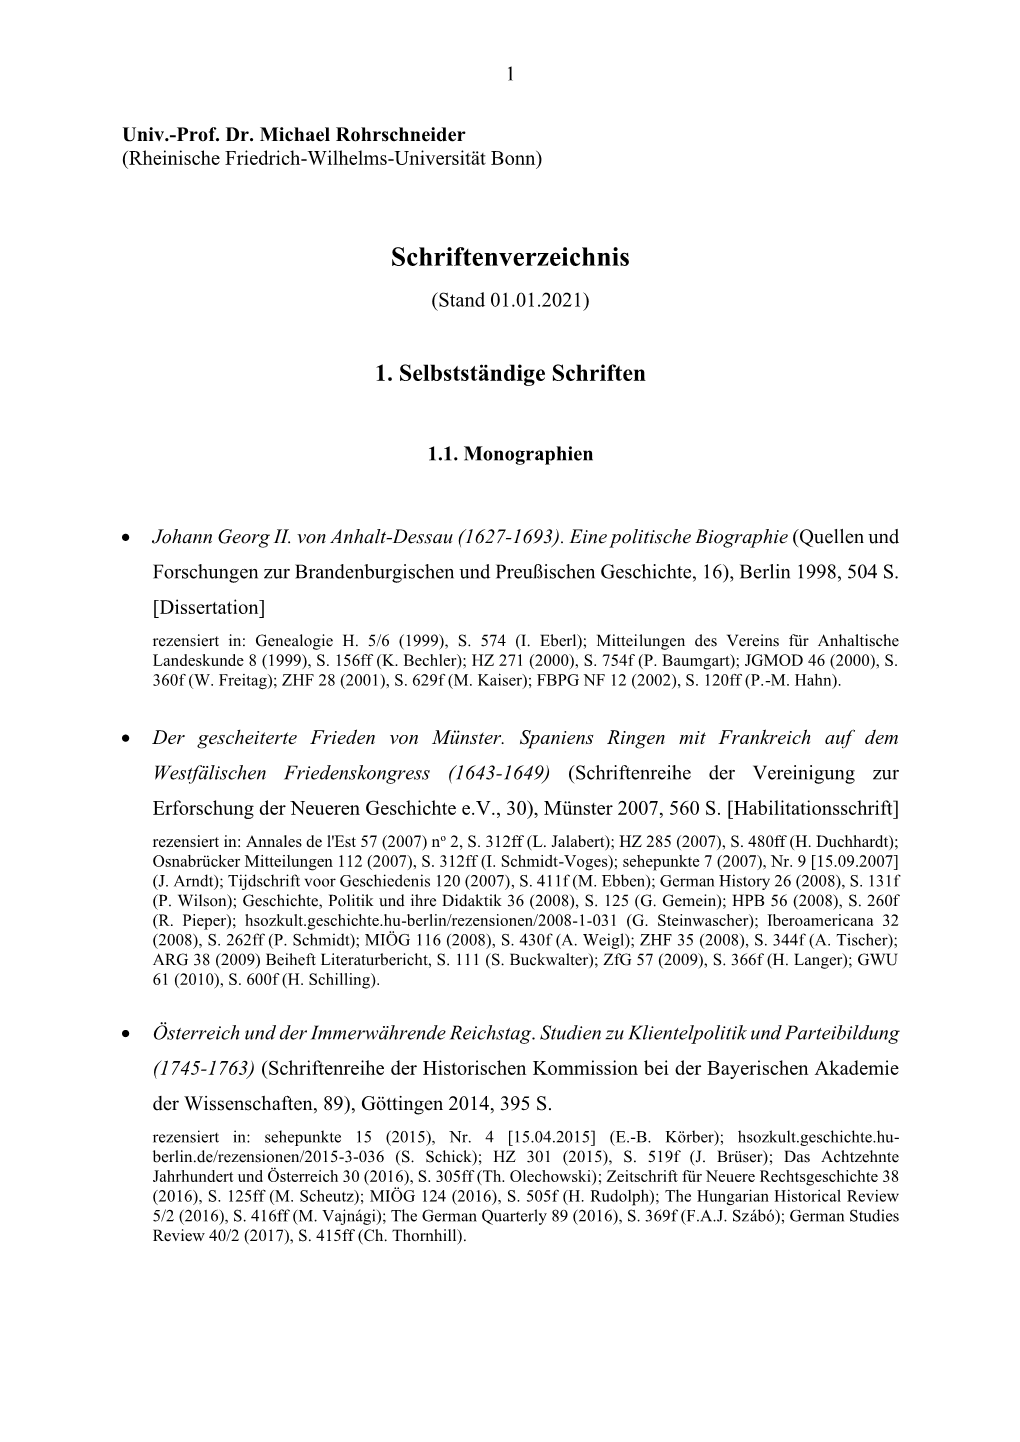 Schriftenverzeichnis-Rohrschneider-2021.Pdf